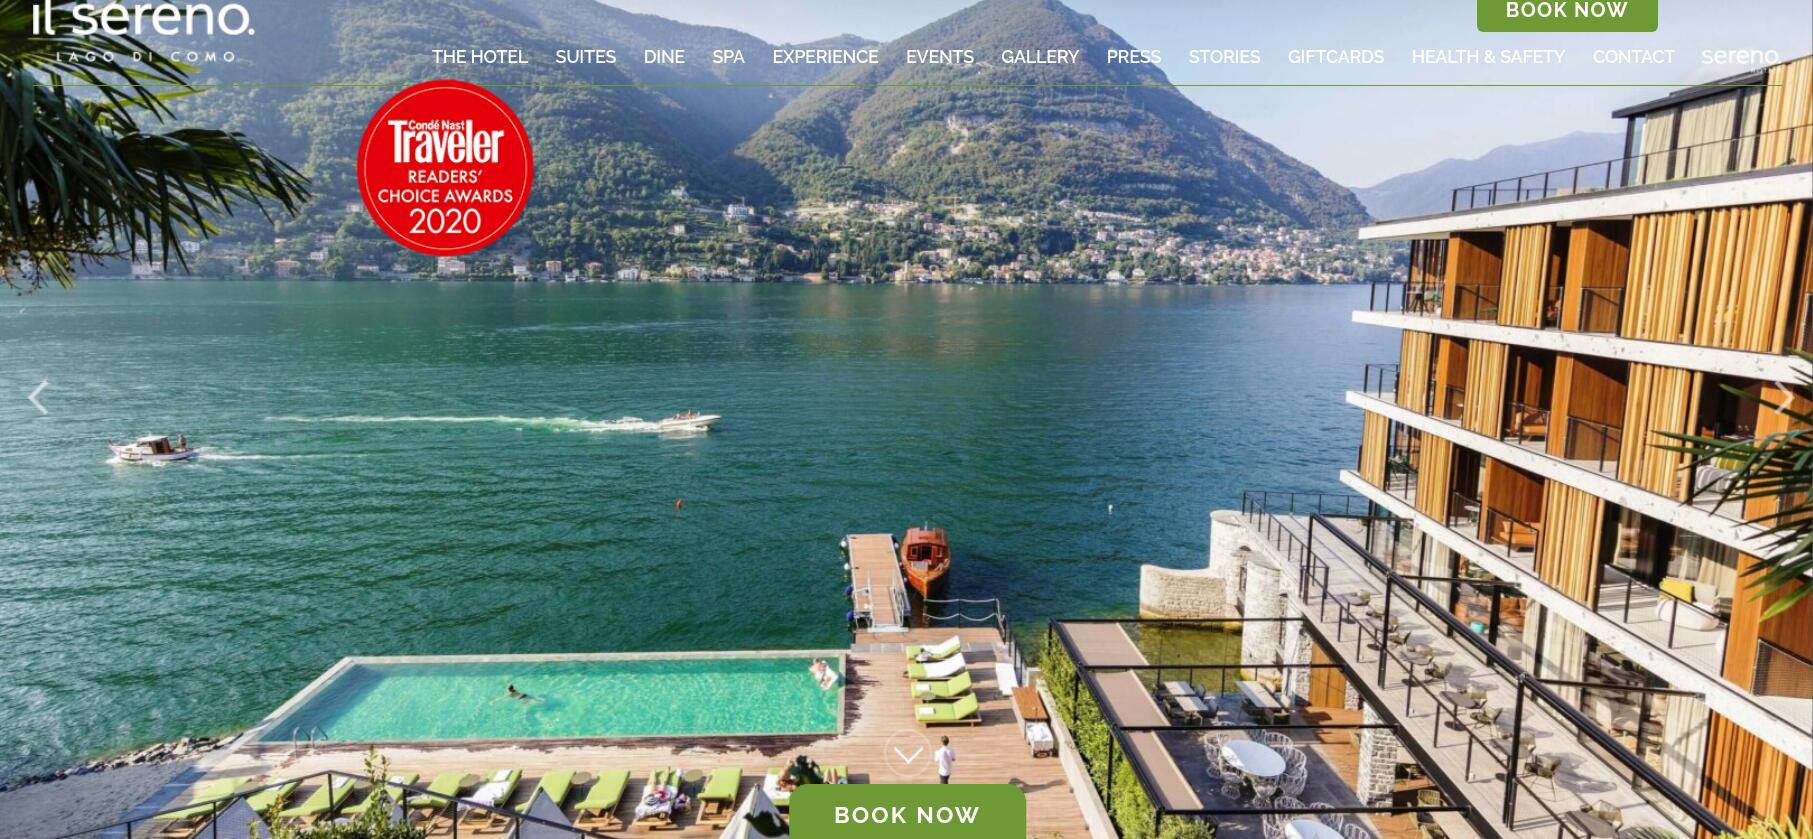 意大利科莫湖畔的豪华酒店Il Sereno推出欧洲首个家具可供出售的套房